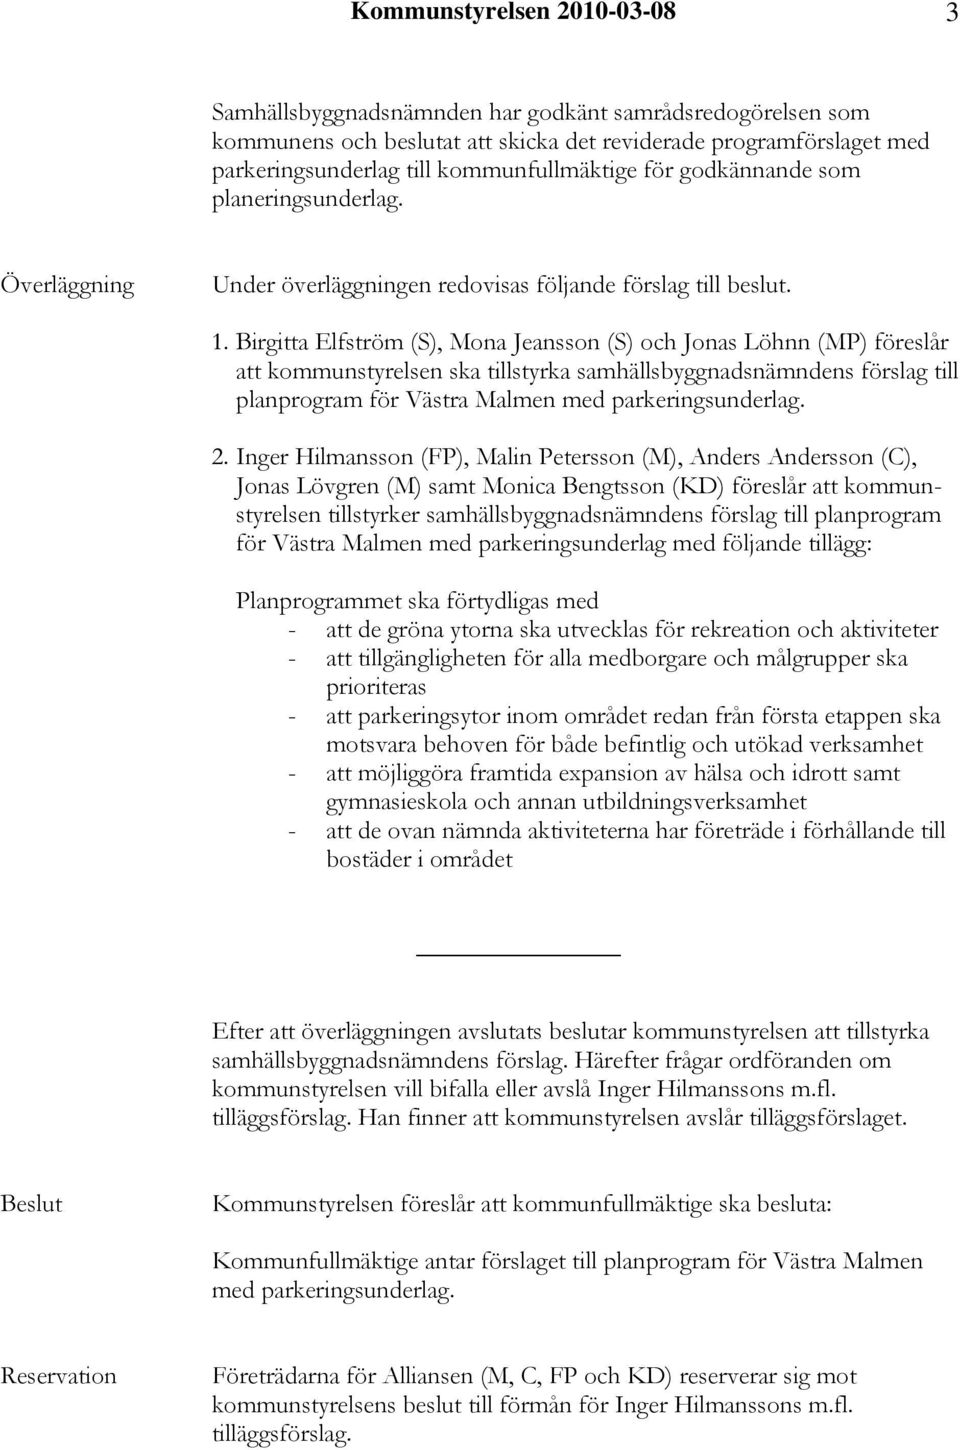 Birgitta Elfström (S), Mona Jeansson (S) och Jonas Löhnn (MP) föreslår att kommunstyrelsen ska tillstyrka samhällsbyggnadsnämndens förslag till planprogram för Västra Malmen med parkeringsunderlag. 2.